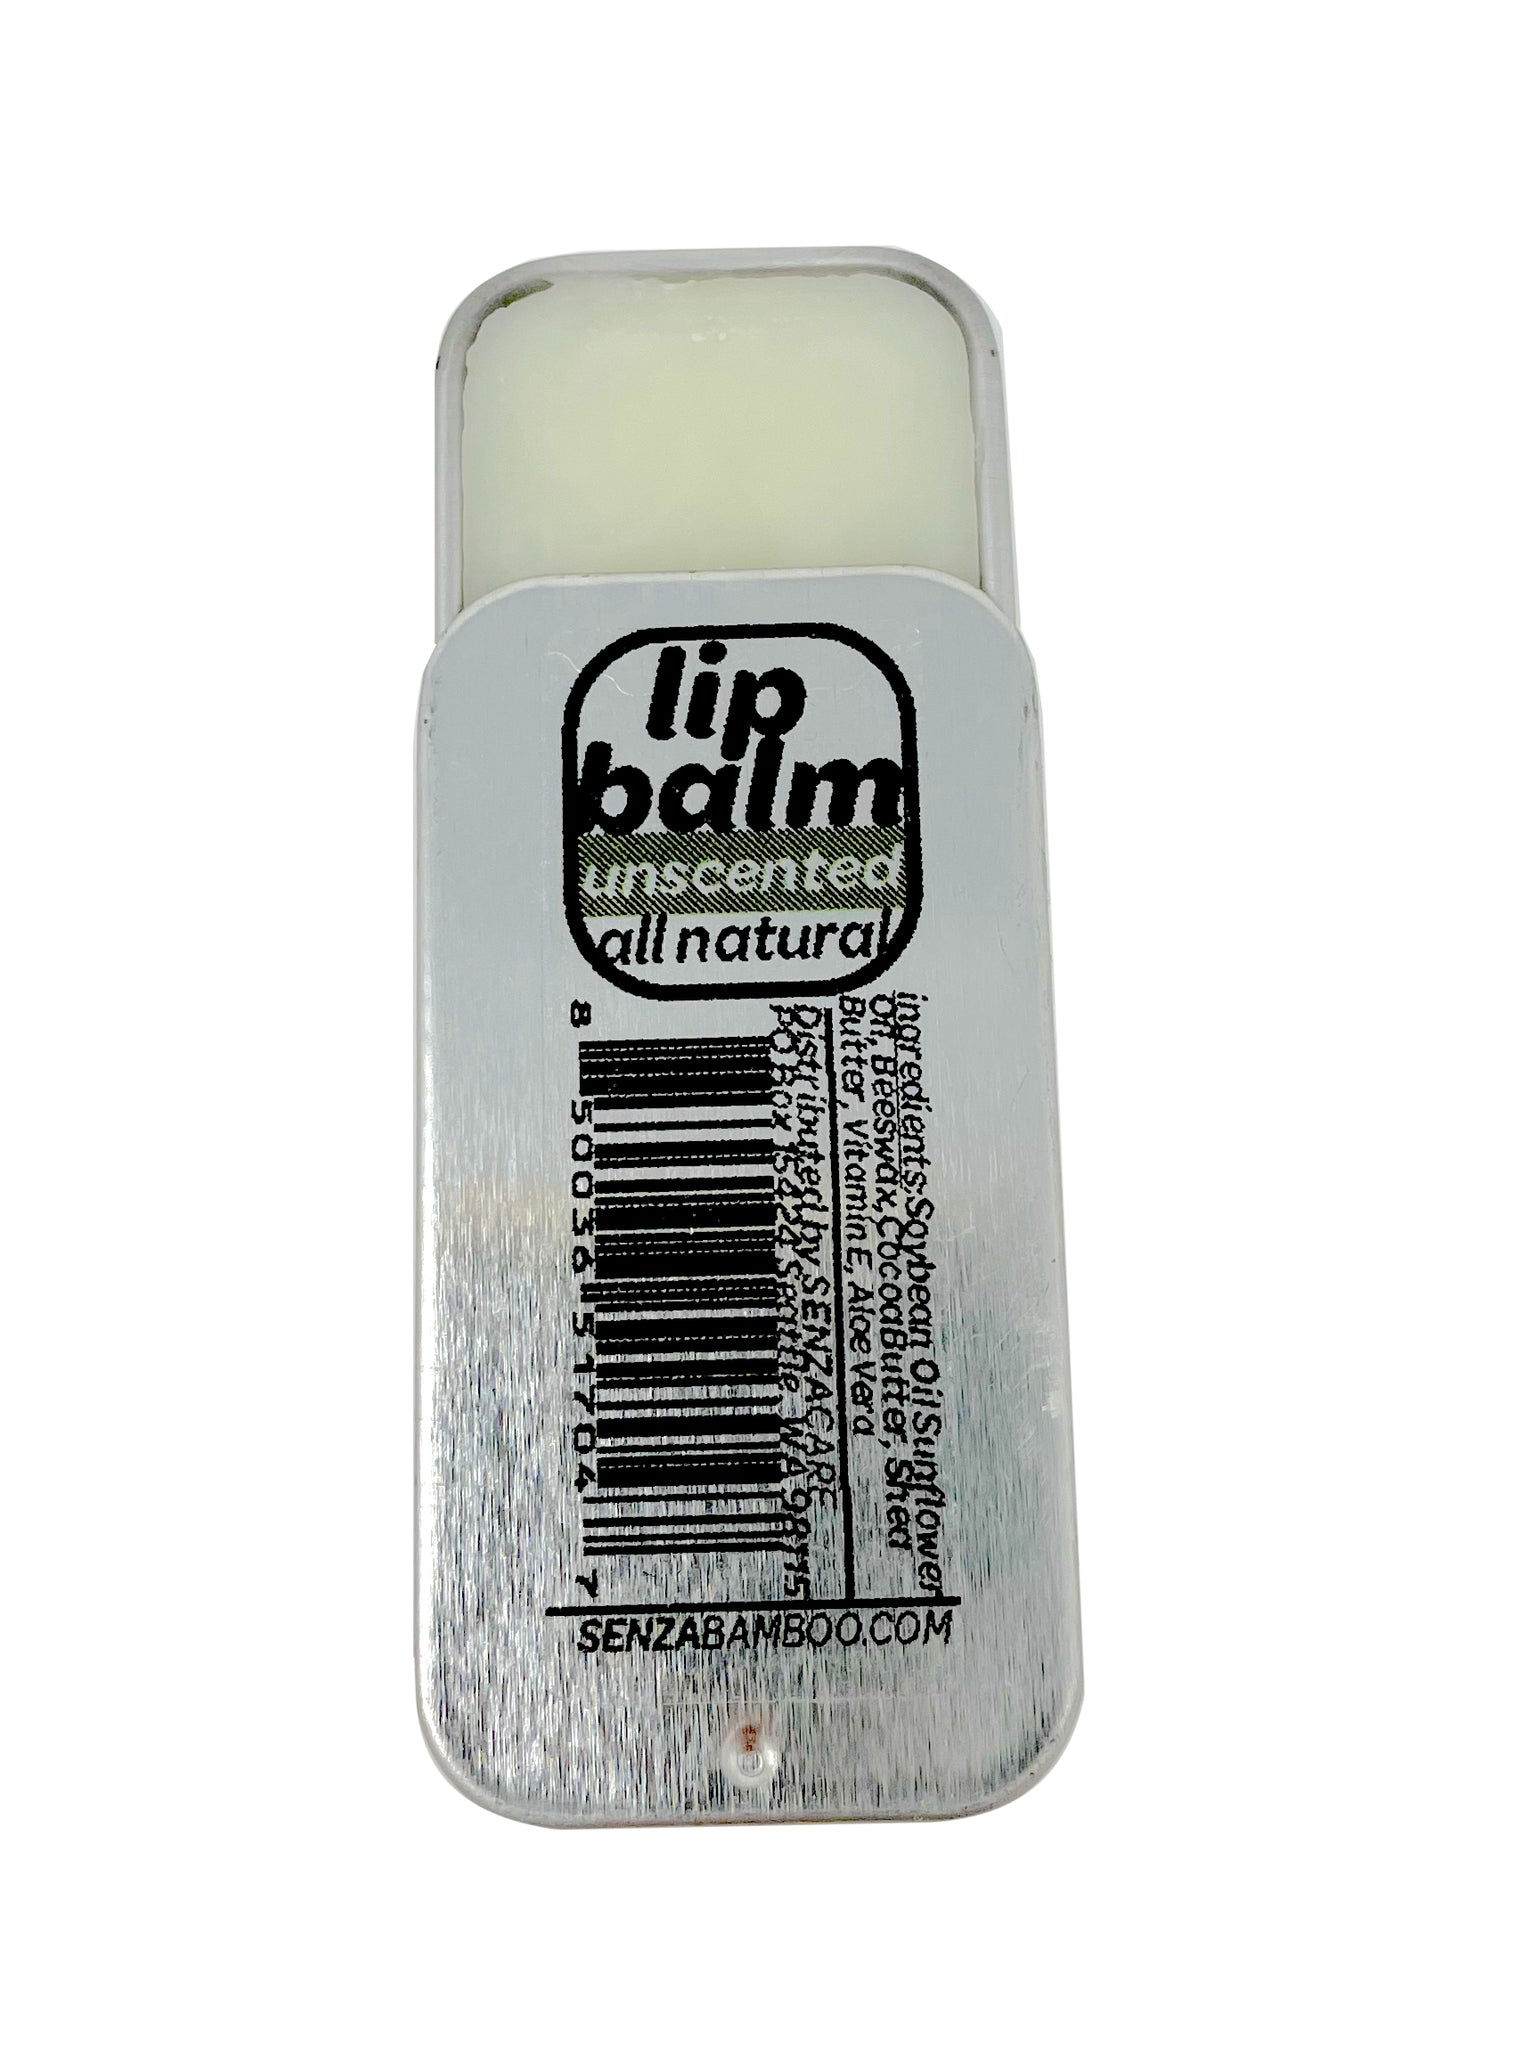 Unscented Plastic-Free Lip Balm  (aluminum tin)